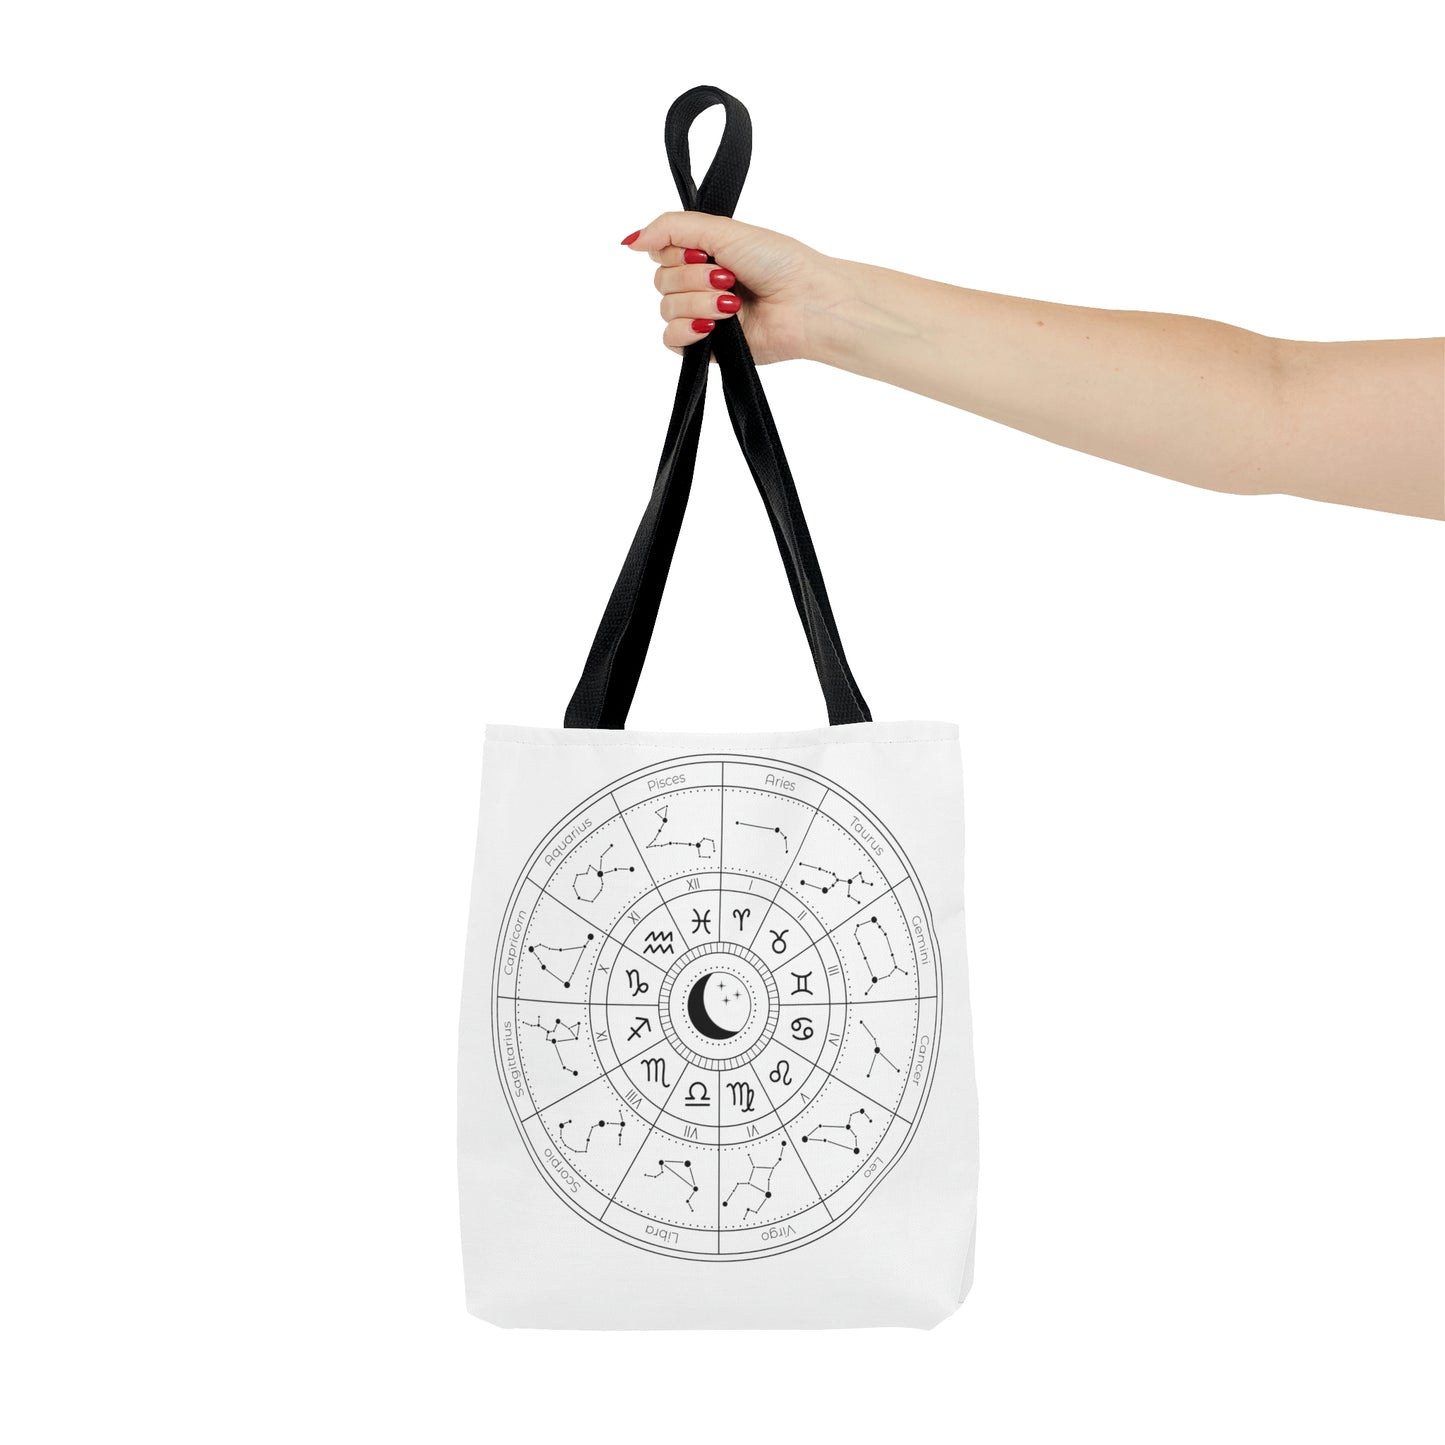 Astrology Wheel Tote Bag